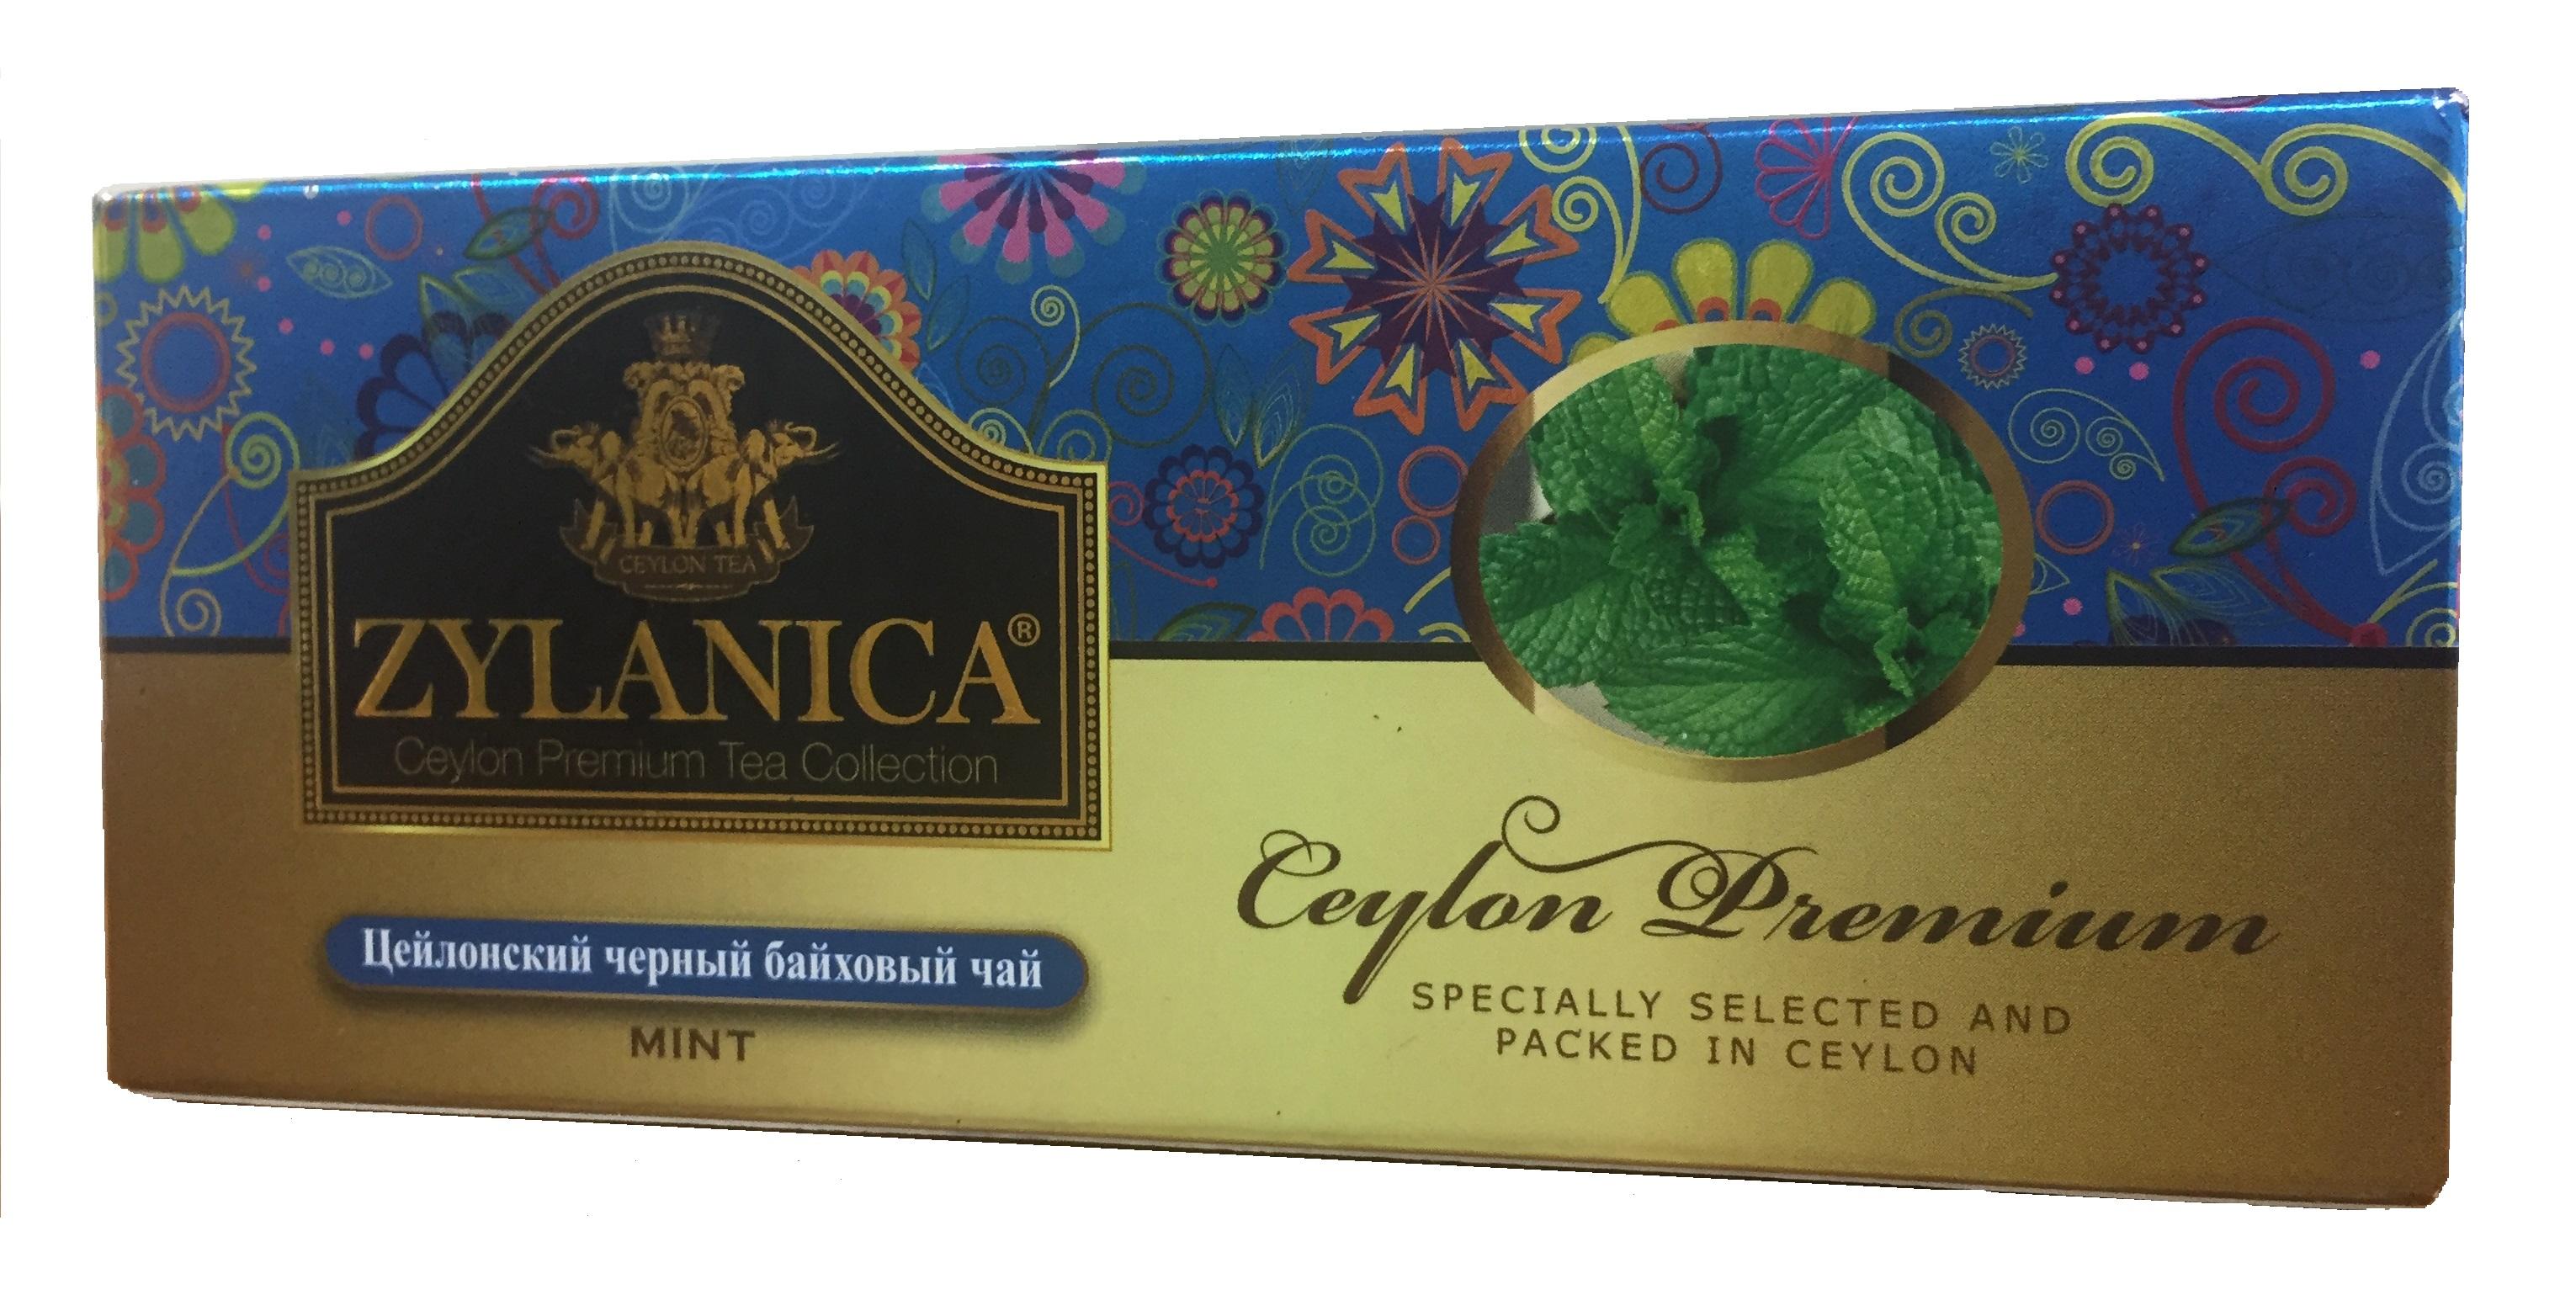 Чай Zylanica Ceylon Premium Collection черный с мятой в пакетиках